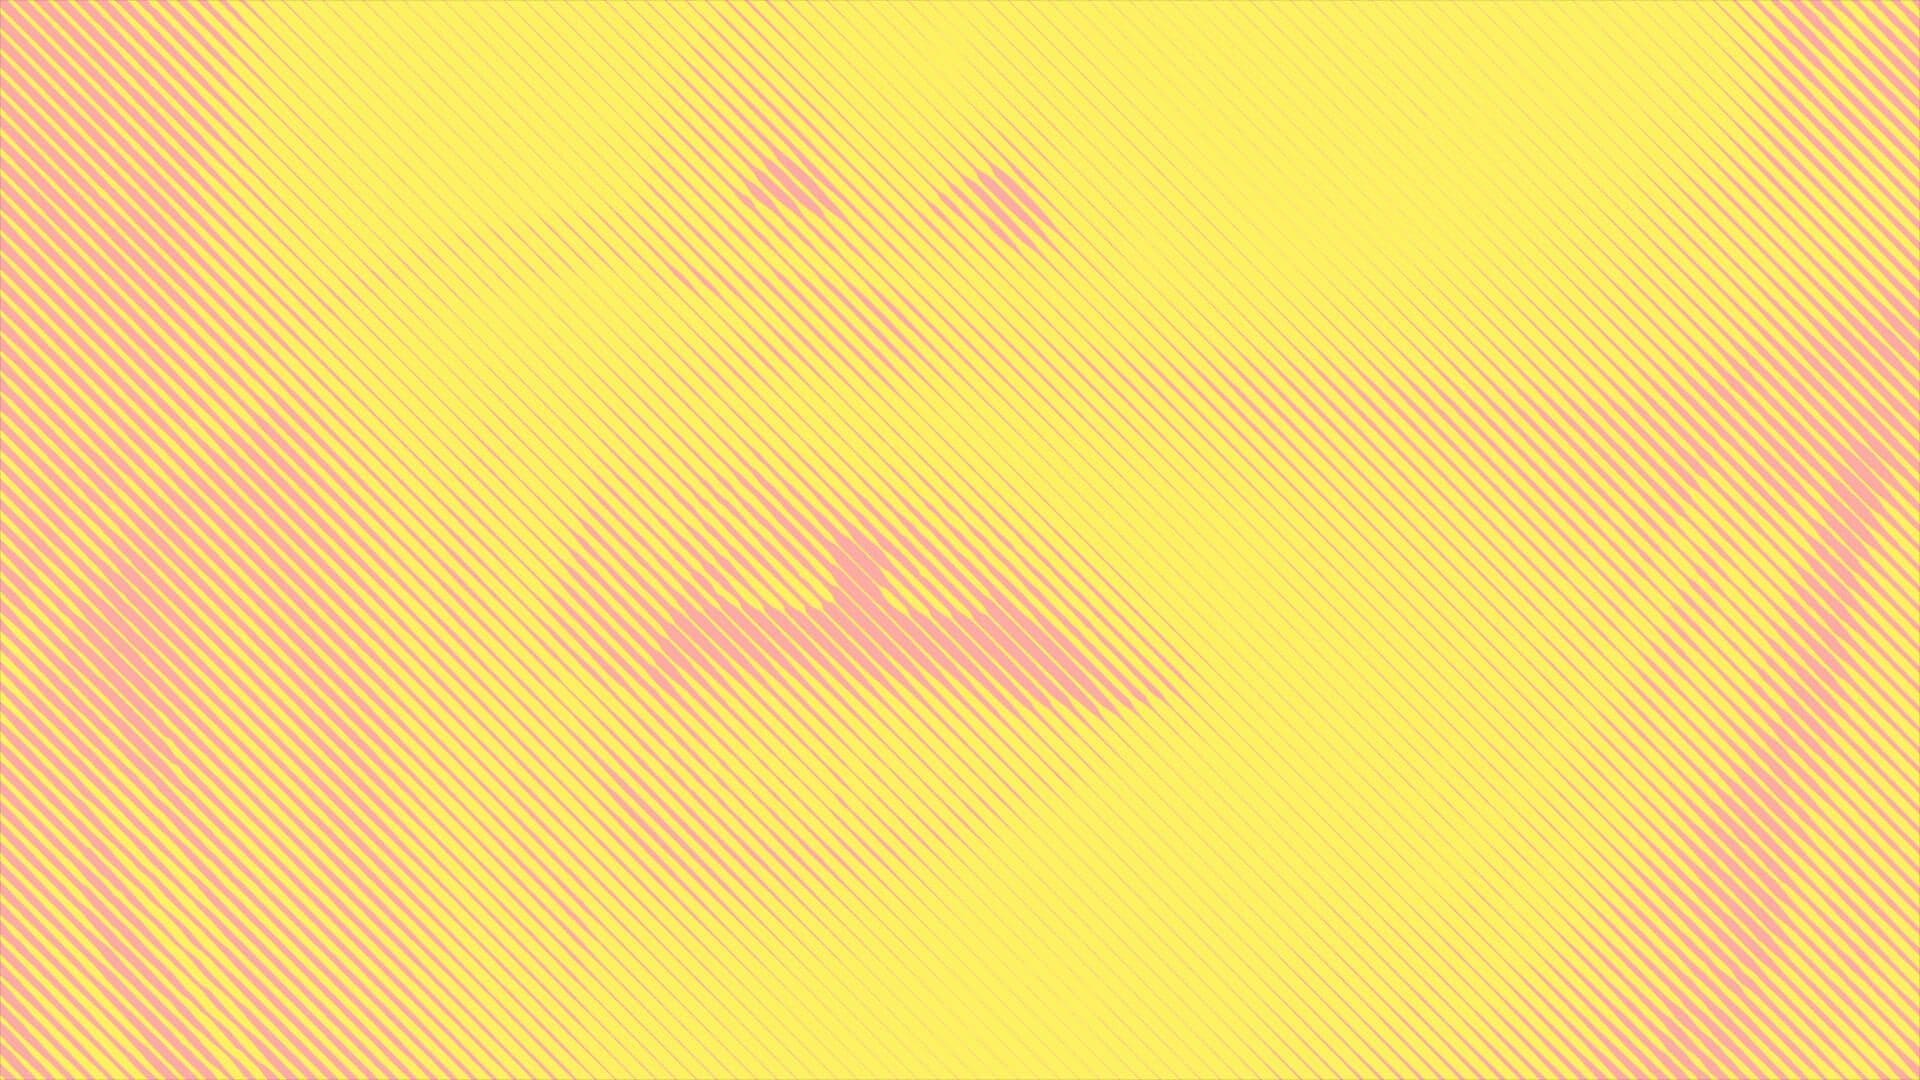 trames graphiques bitmap rose et jaune, habillent le clip du nouveau titre de Vanessa Paradis.